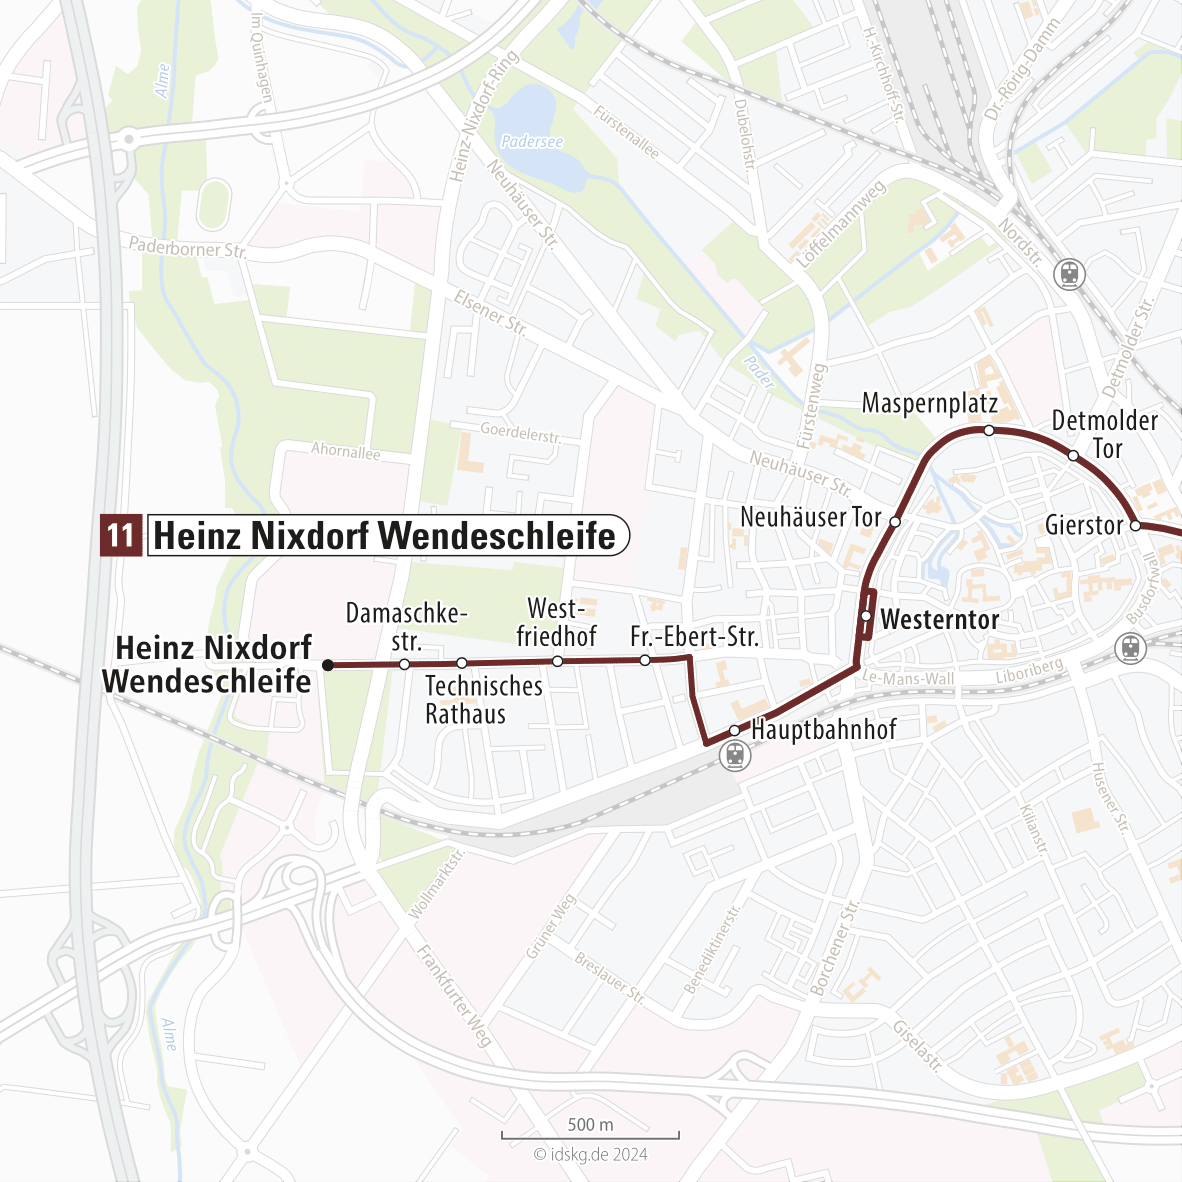 Kartenausschnitt der Linie 11 Heinz Nixdorf Wendeschleife bis Westerntor 15x15